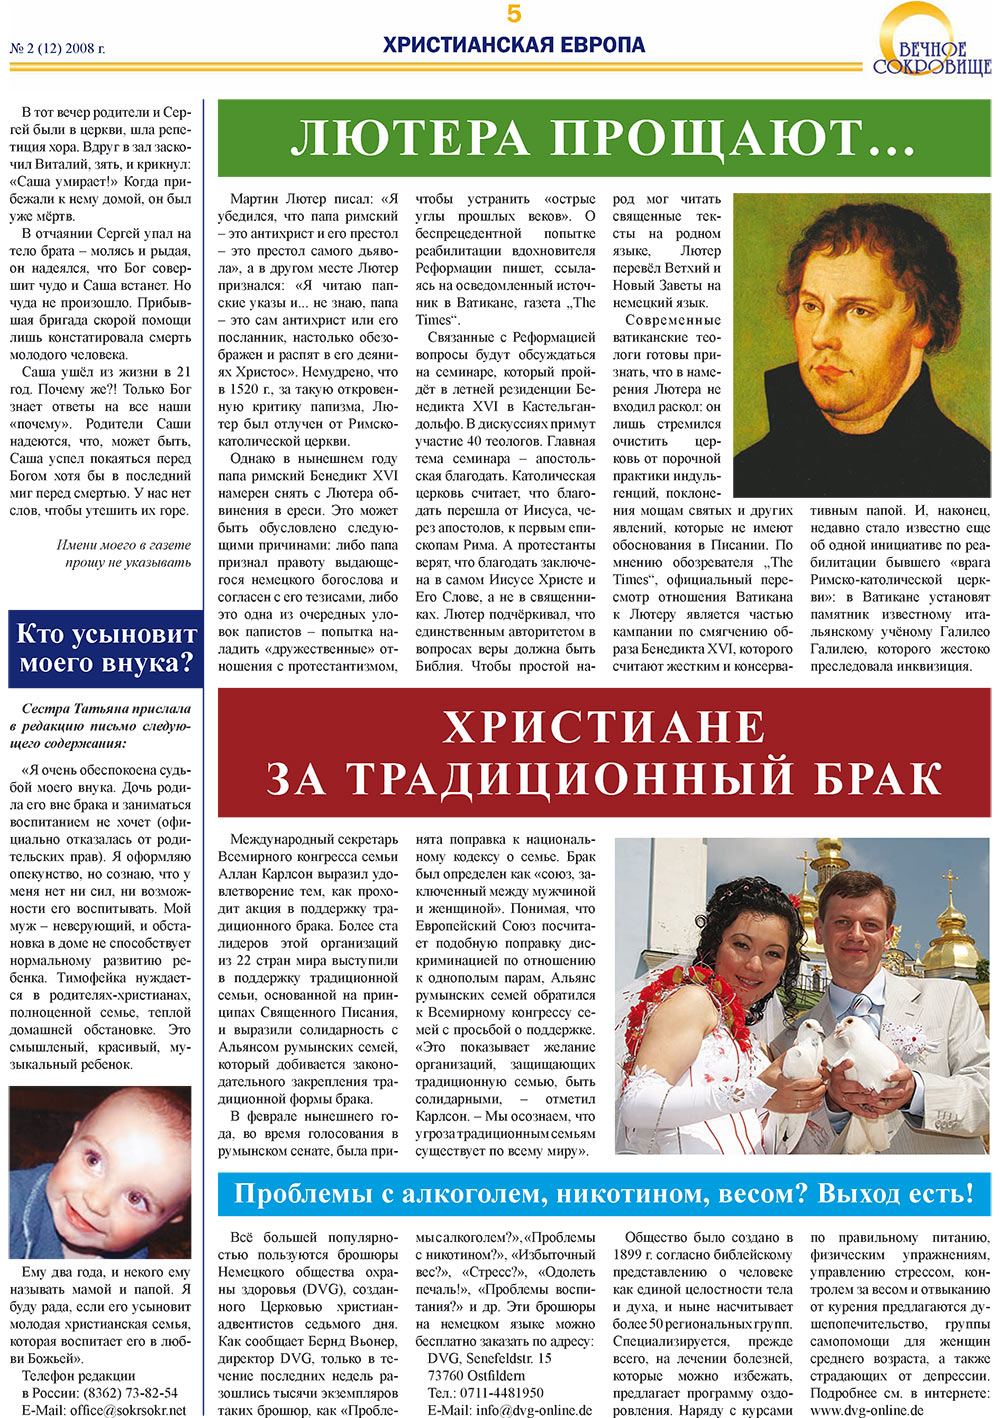 Вечное сокровище, газета. 2008 №2 стр.5